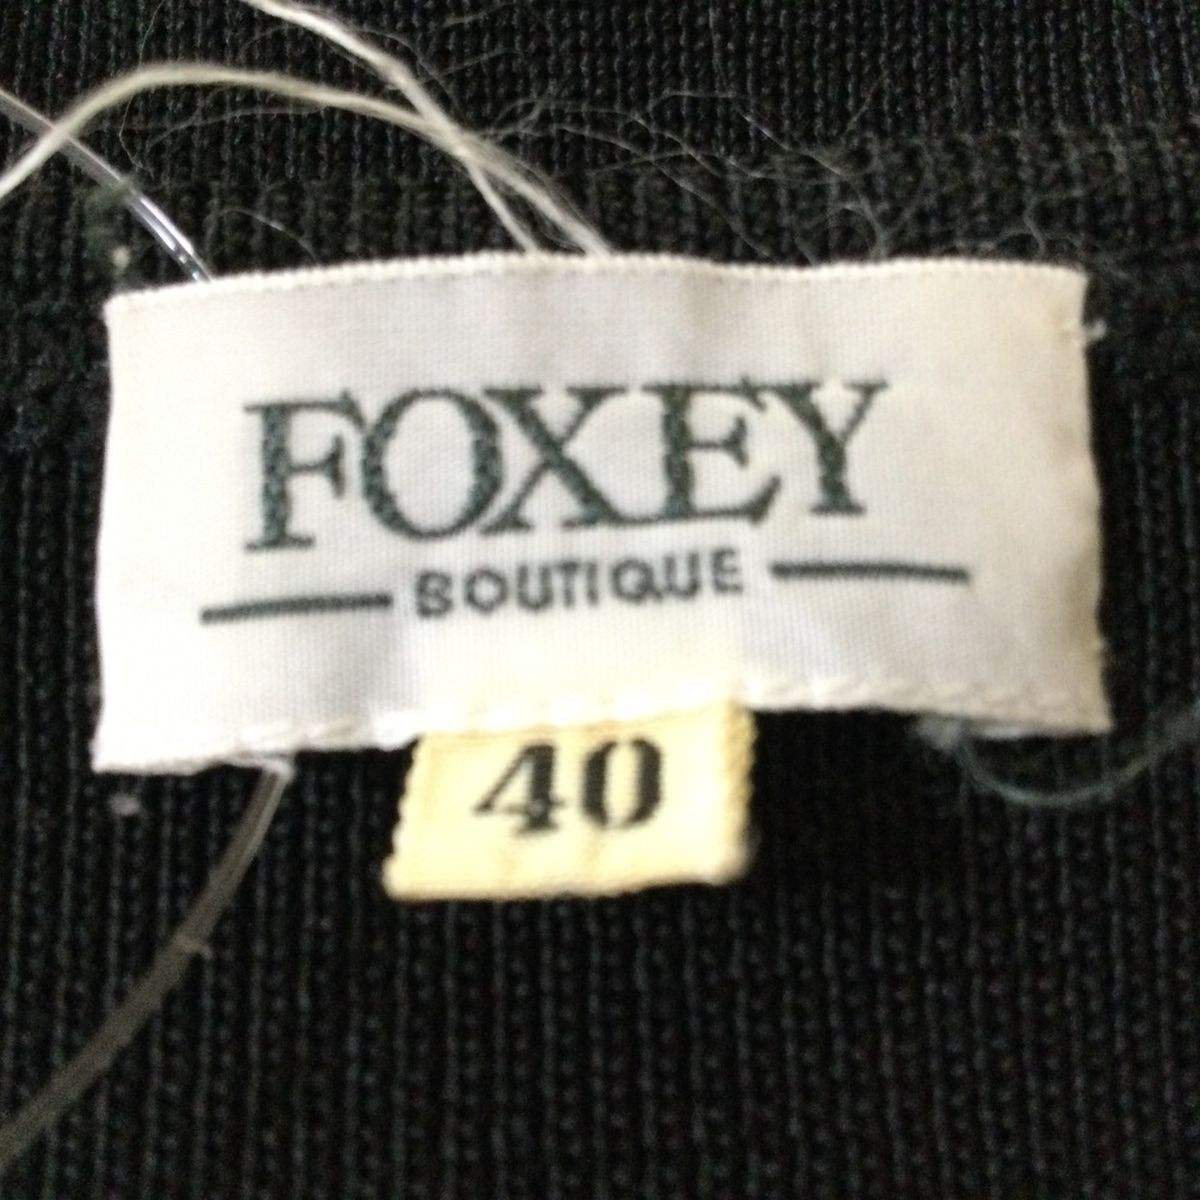 FOXEY(フォクシー) 半袖カットソー サイズ40 M レディース - 黒 リボン ...